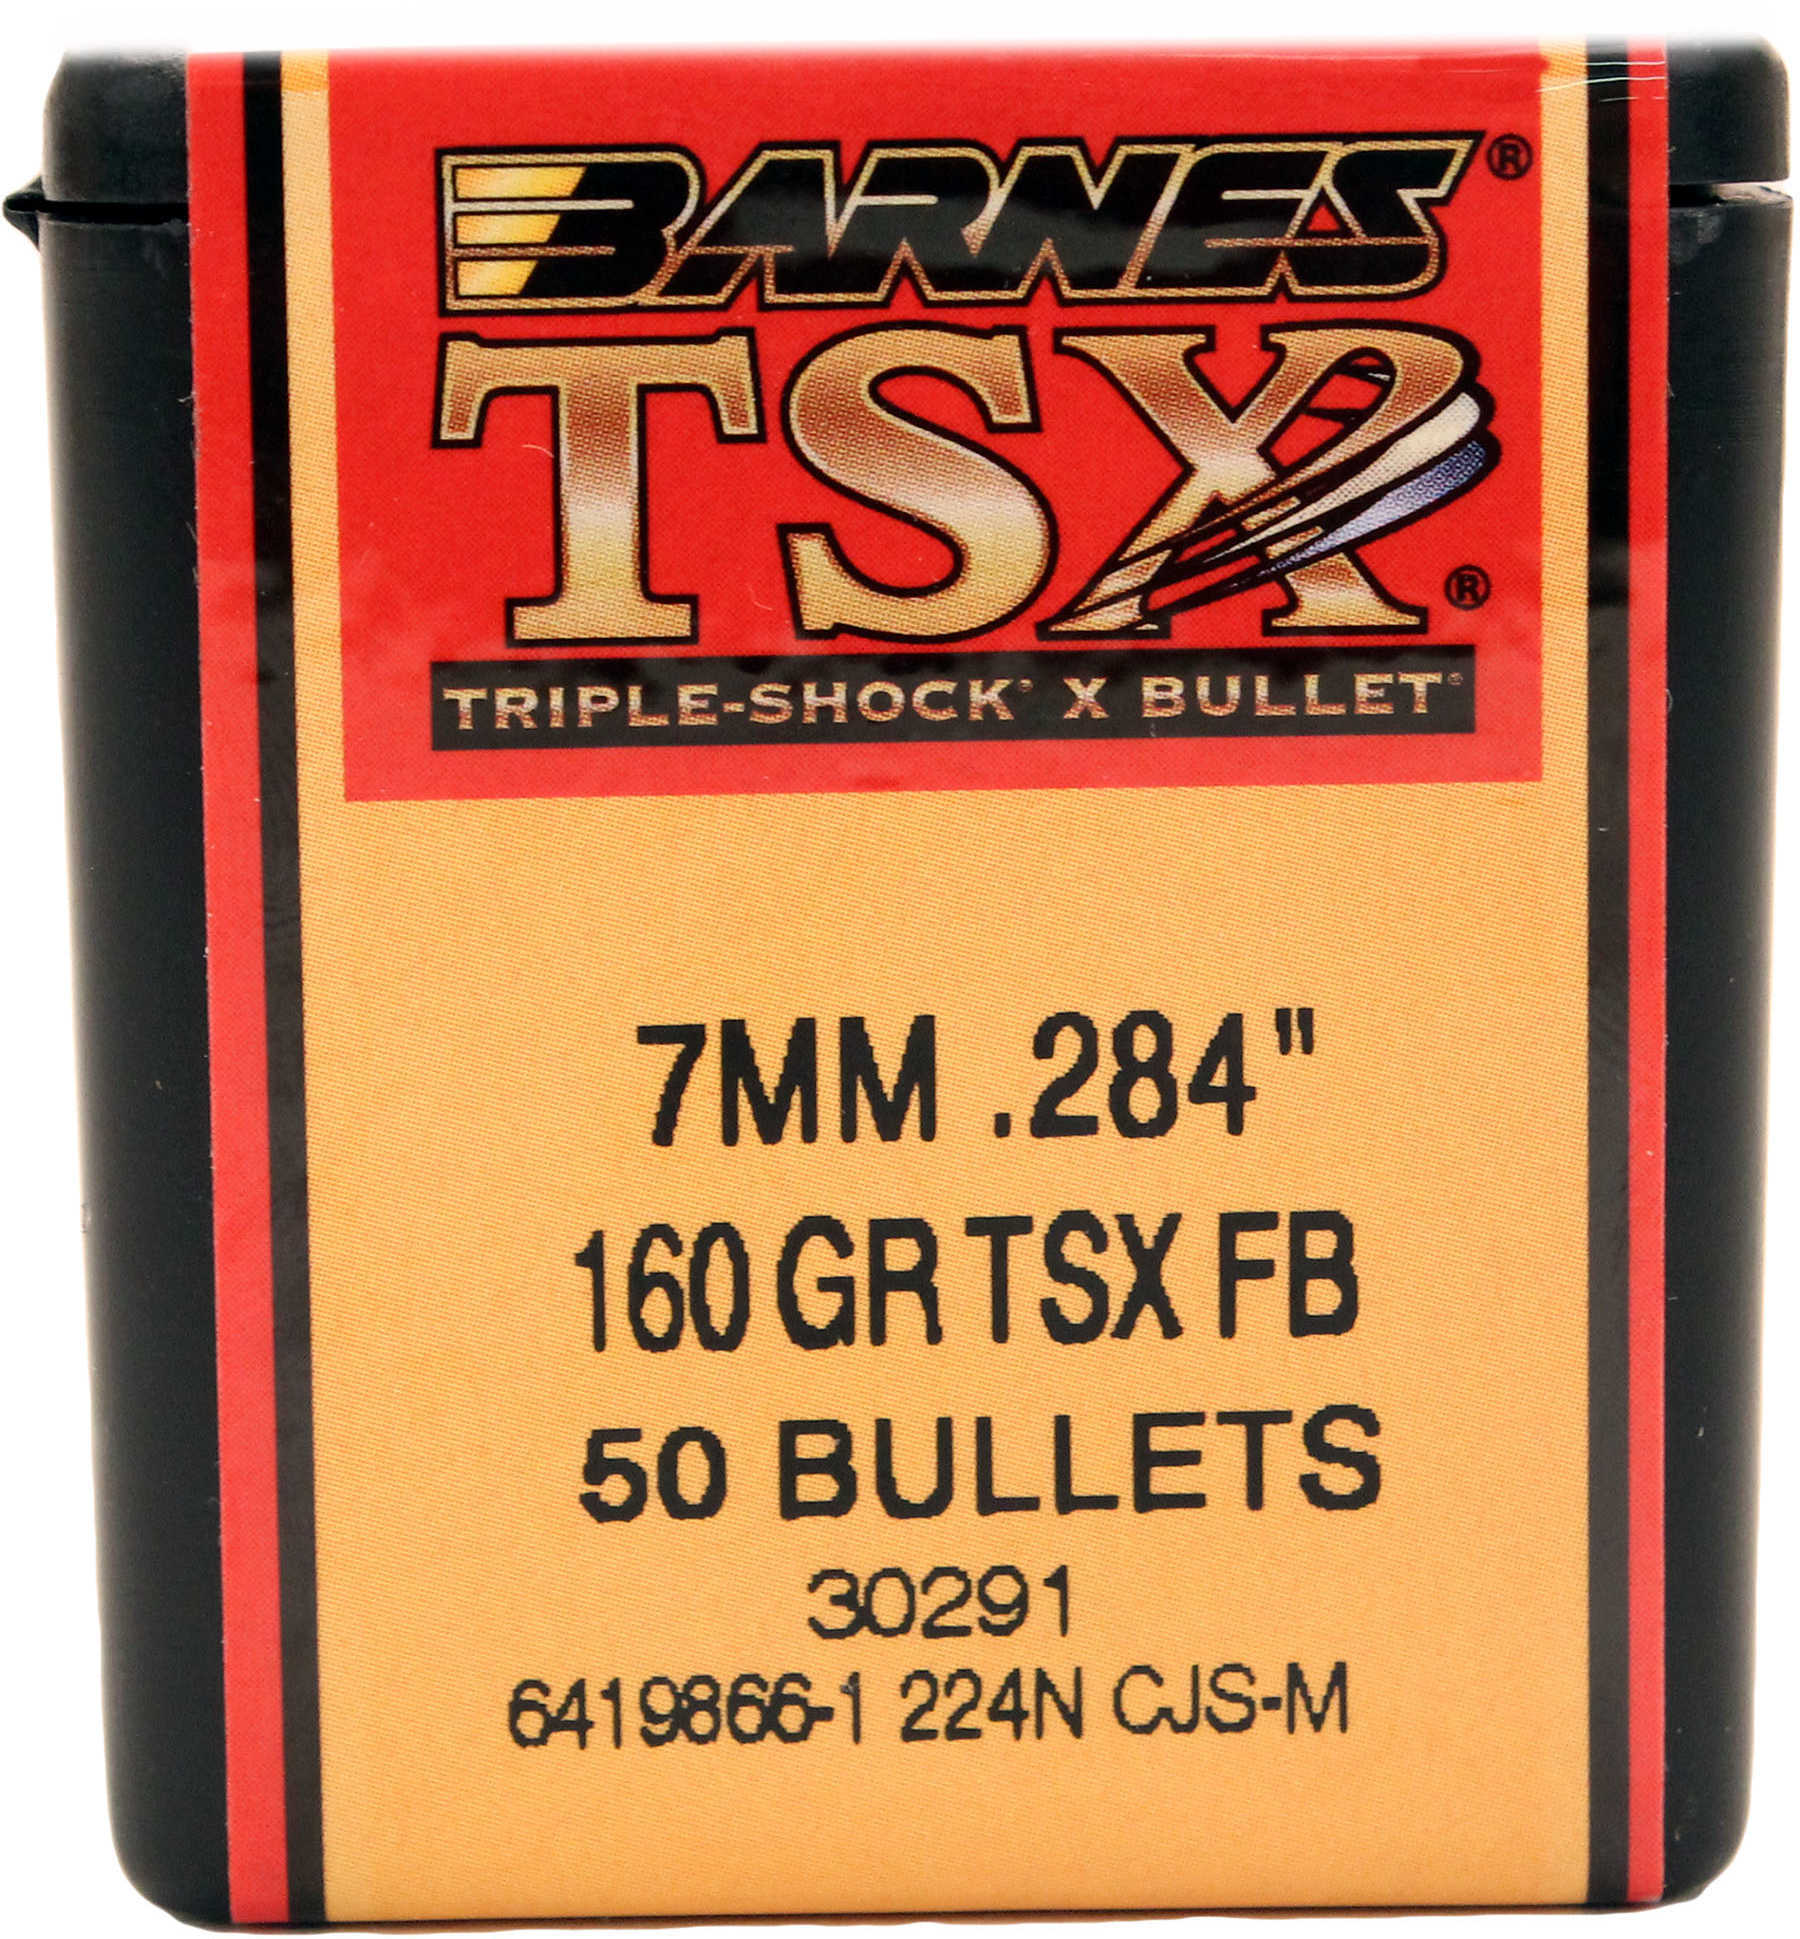 Barnes 7MM 160 Grains TSX .284" 50/Box 30291